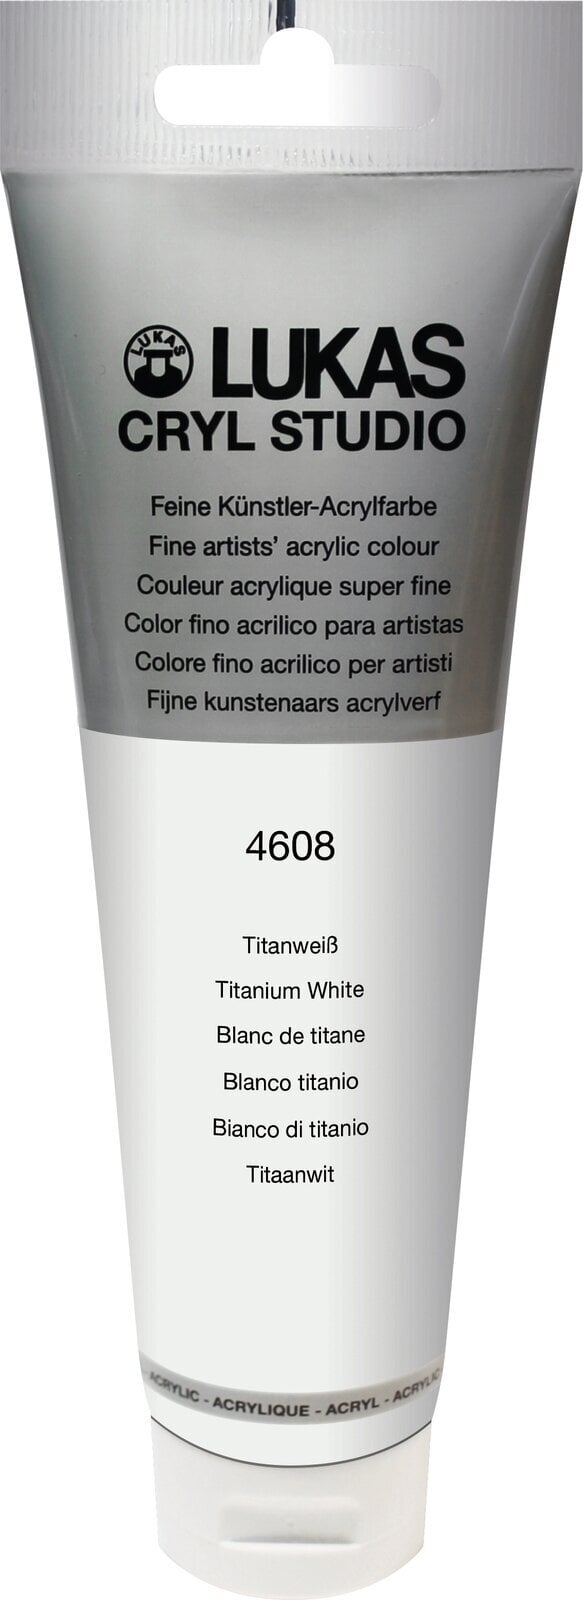 Akrylová barva Lukas Cryl Studio Akrylová barva 125 ml Titanium White